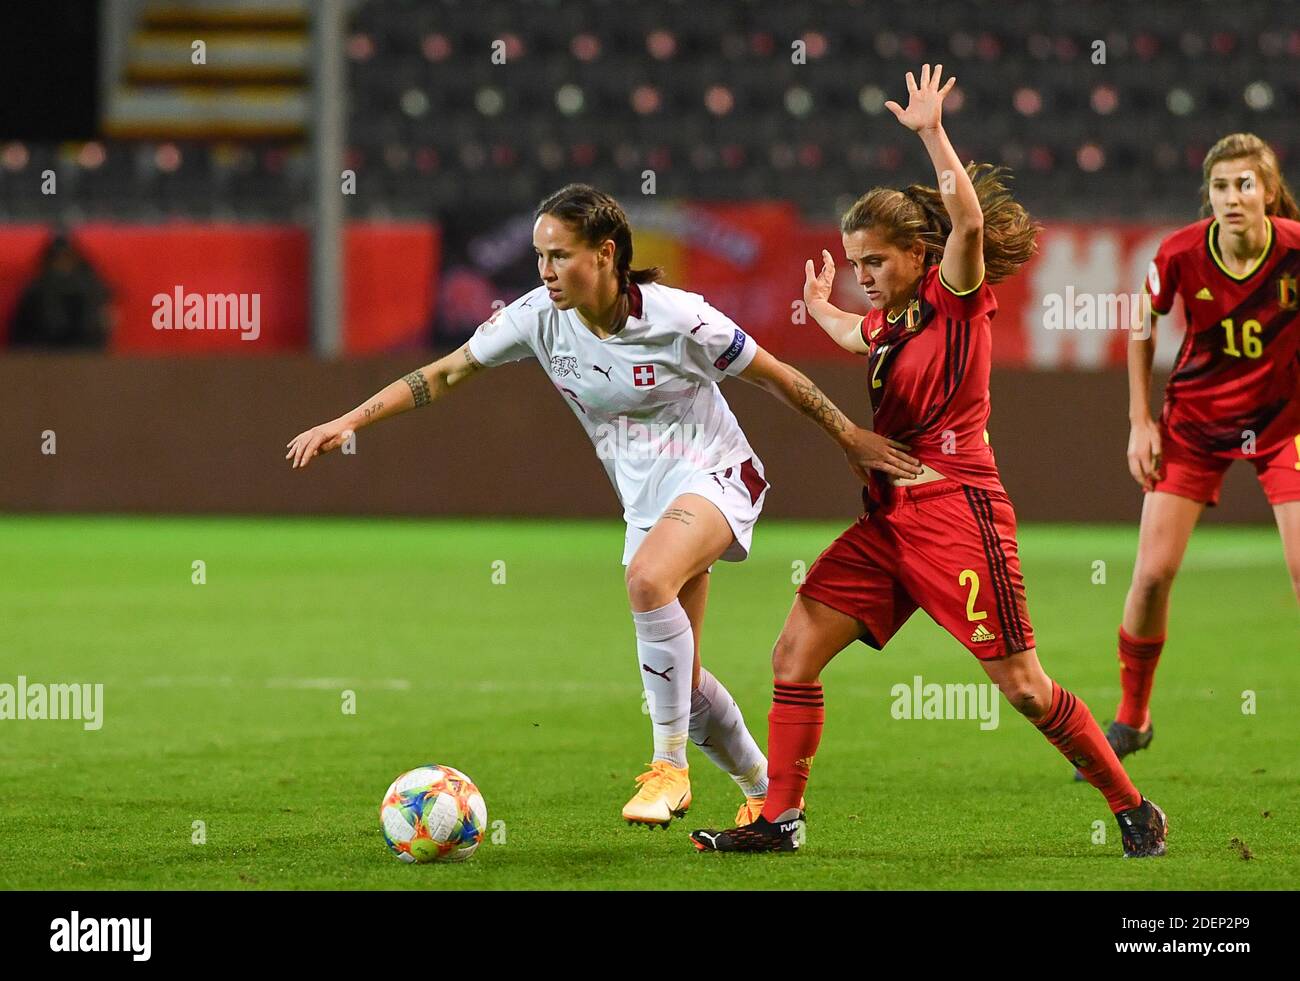 Die Schweizer Geraldine Reuteler und die belgische Davina Philtjens kämpfen während eines Fußballspiels zwischen den belgischen Roten Flammen und der Schweiz um den Ball. Stockfoto